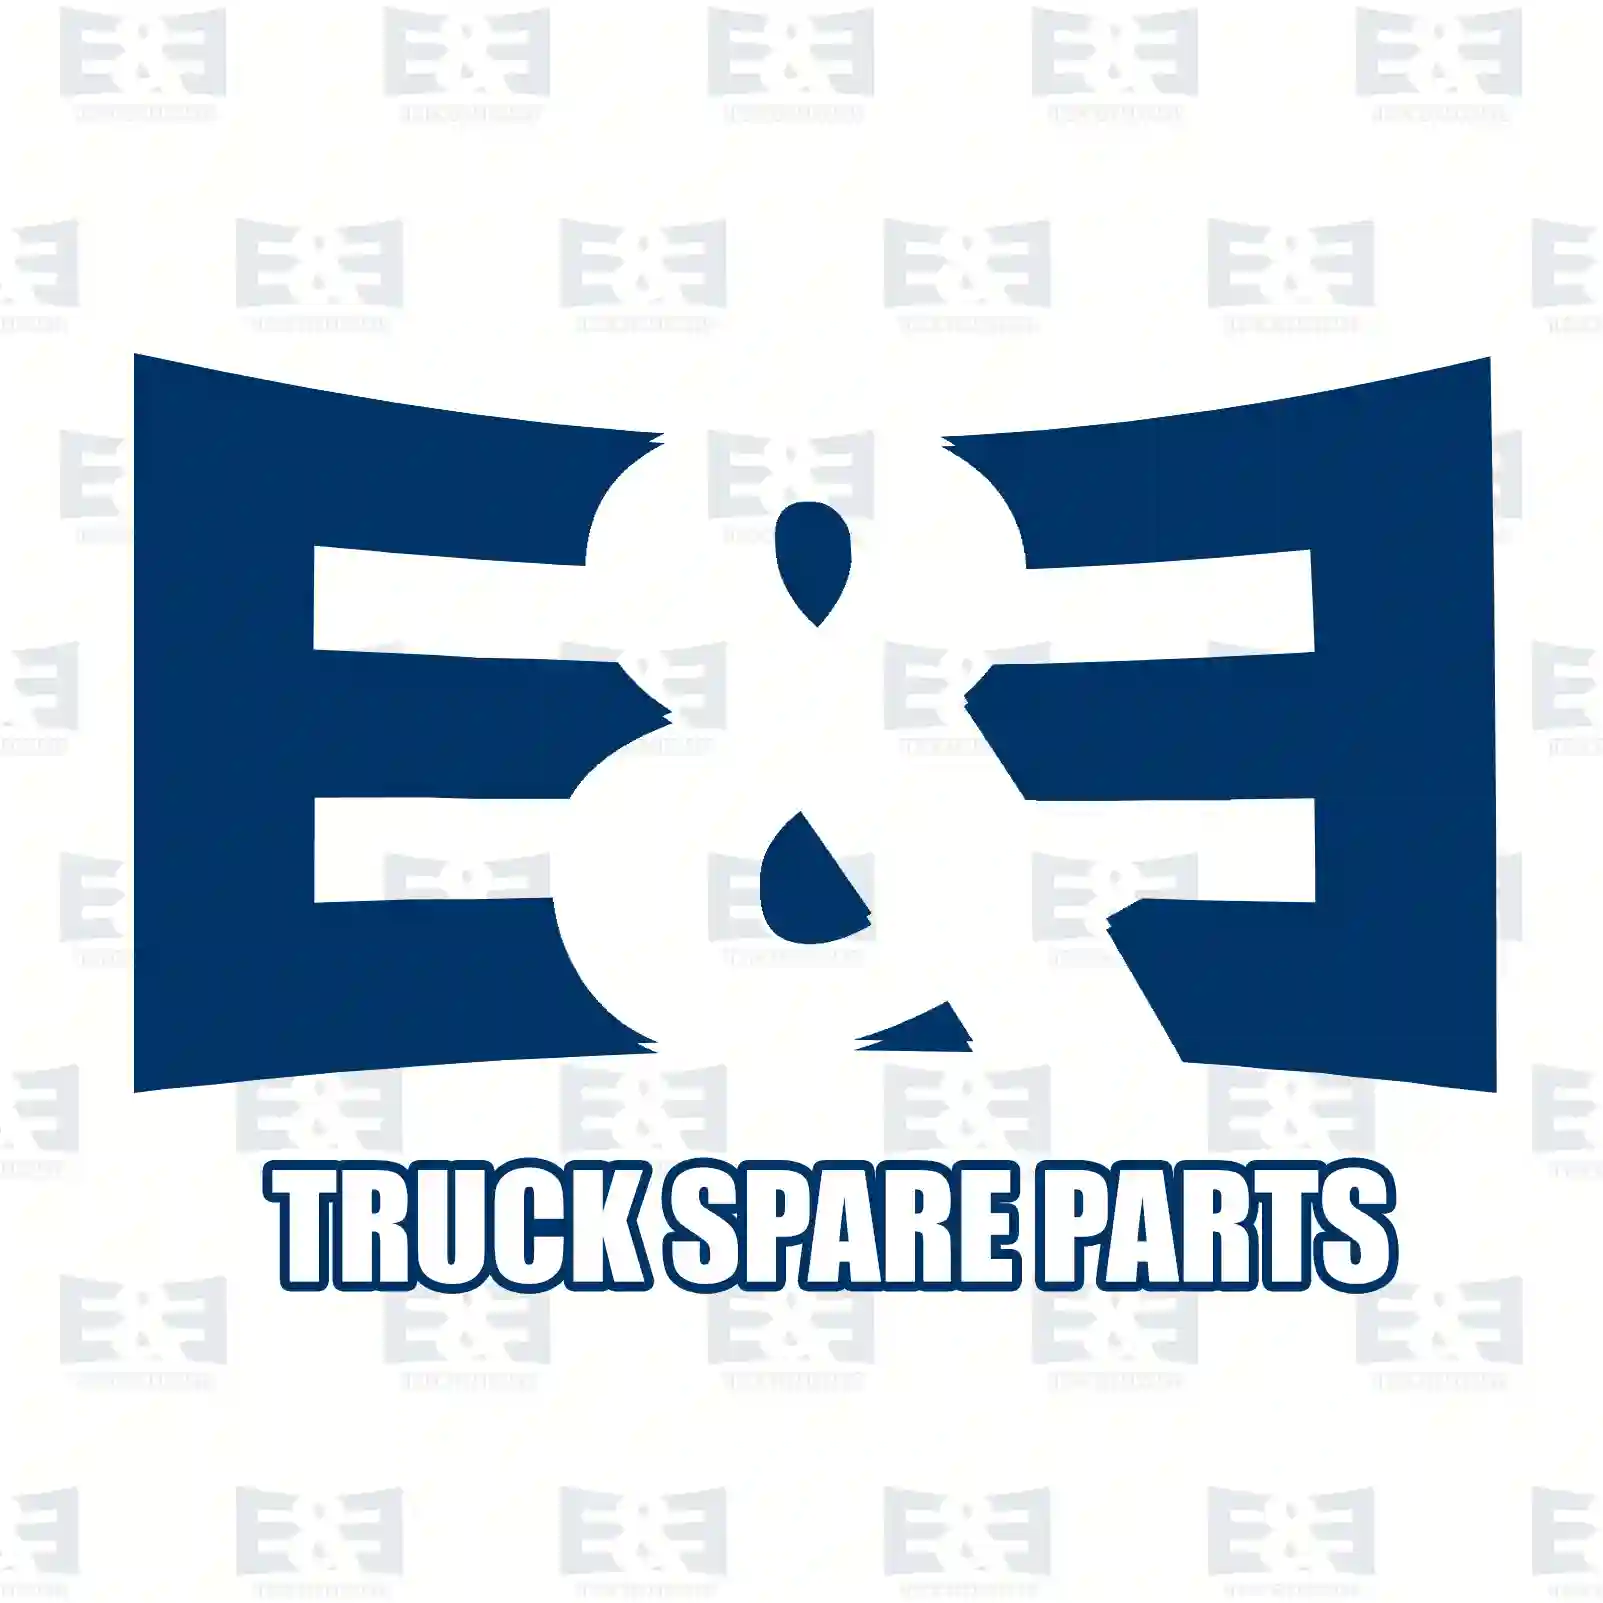 Repair kit, foot brake valve, 2E2296373, 0692454, 0697422, 692454, 697422, 42493947, 5000821899, 0014300460, 5000821899, 5000821900, 5021170164, 270969 ||  2E2296373 E&E Truck Spare Parts | Truck Spare Parts, Auotomotive Spare Parts Repair kit, foot brake valve, 2E2296373, 0692454, 0697422, 692454, 697422, 42493947, 5000821899, 0014300460, 5000821899, 5000821900, 5021170164, 270969 ||  2E2296373 E&E Truck Spare Parts | Truck Spare Parts, Auotomotive Spare Parts